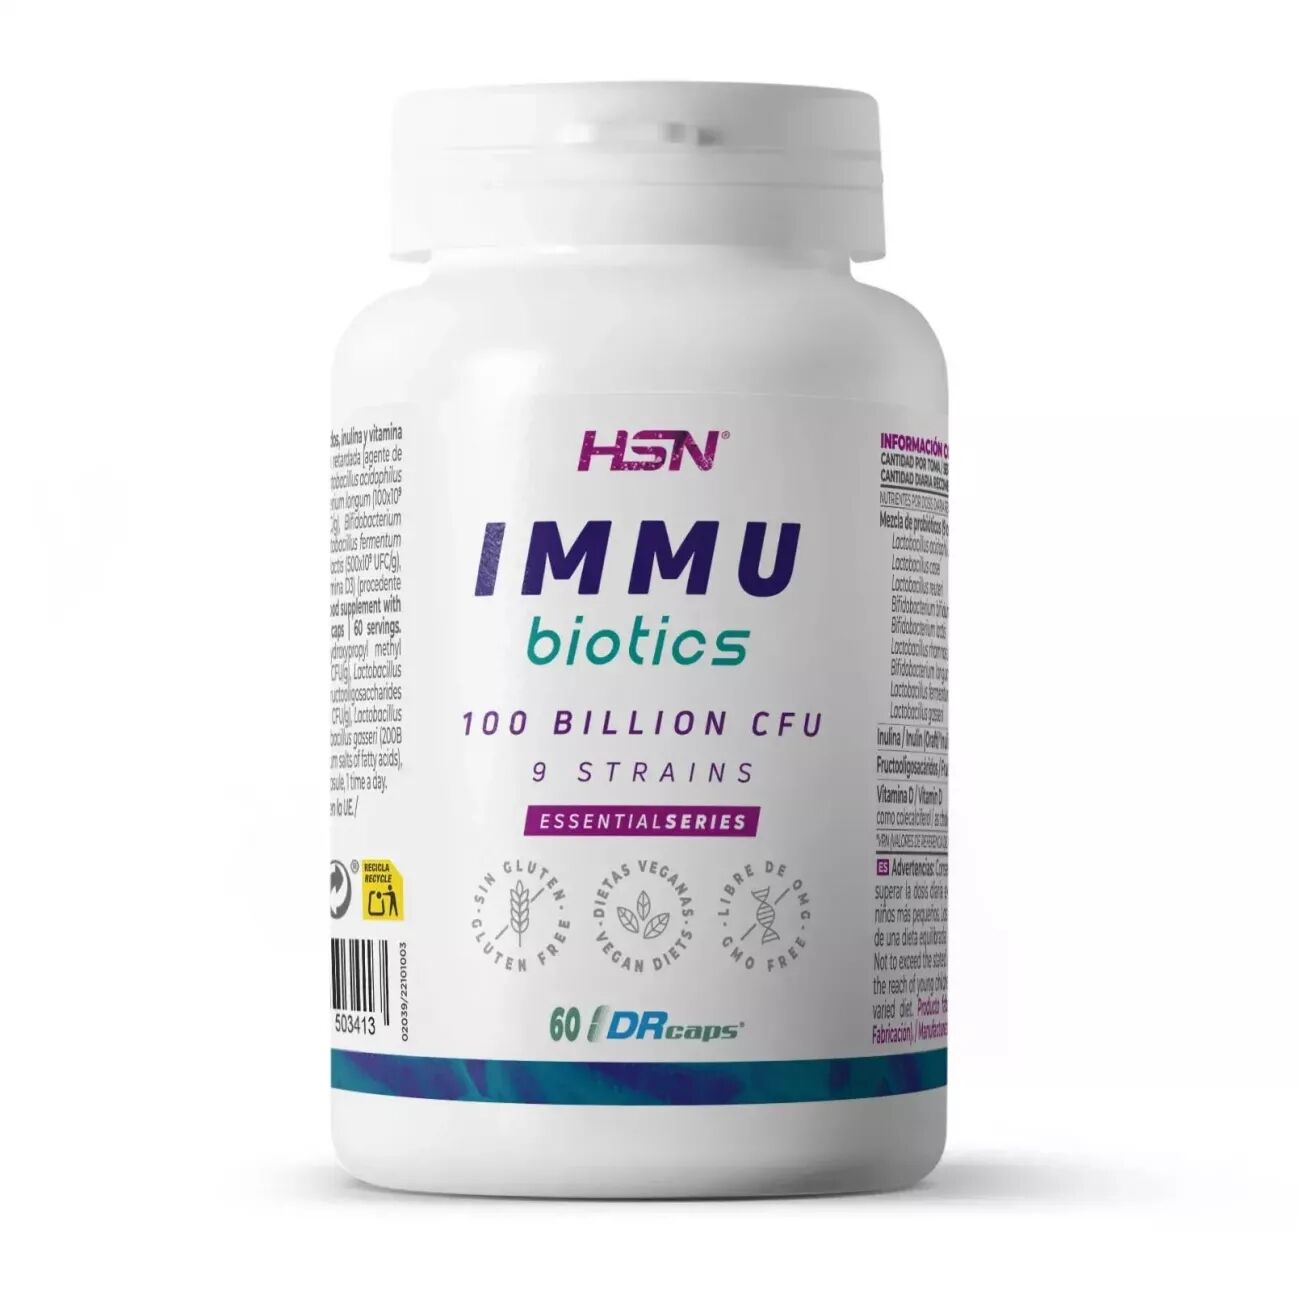 HSN Inmu biotics (probióticos) 100b ufc 60 veg caps